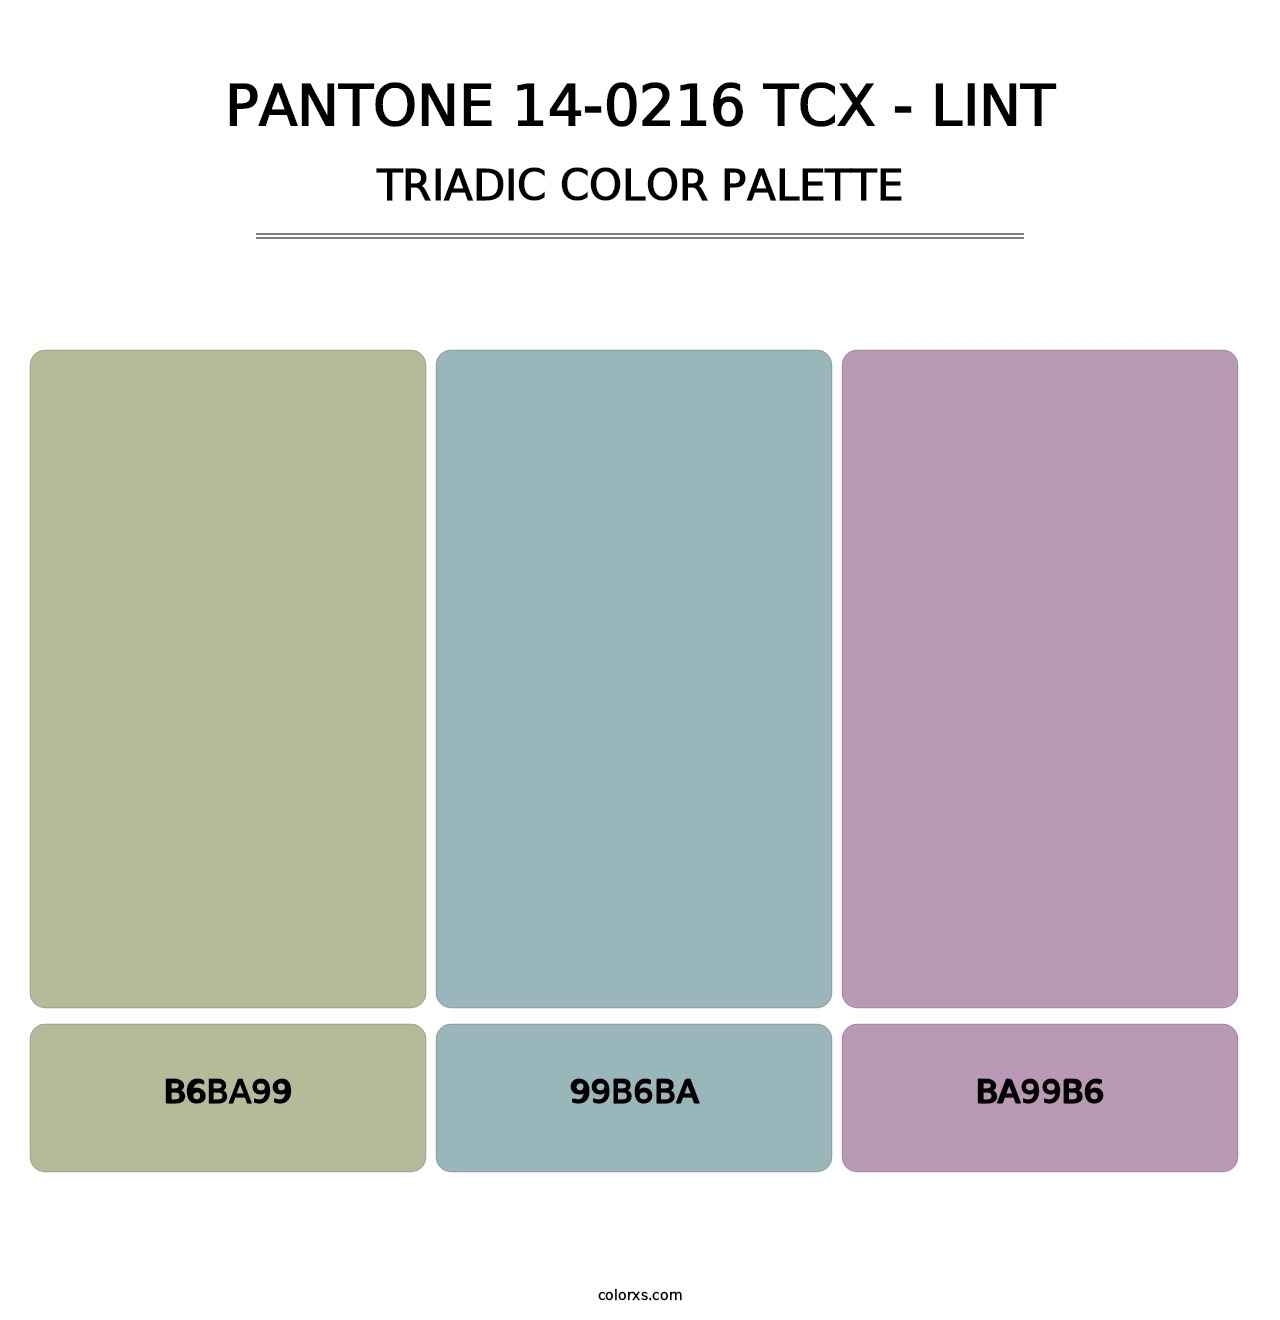 PANTONE 14-0216 TCX - Lint - Triadic Color Palette